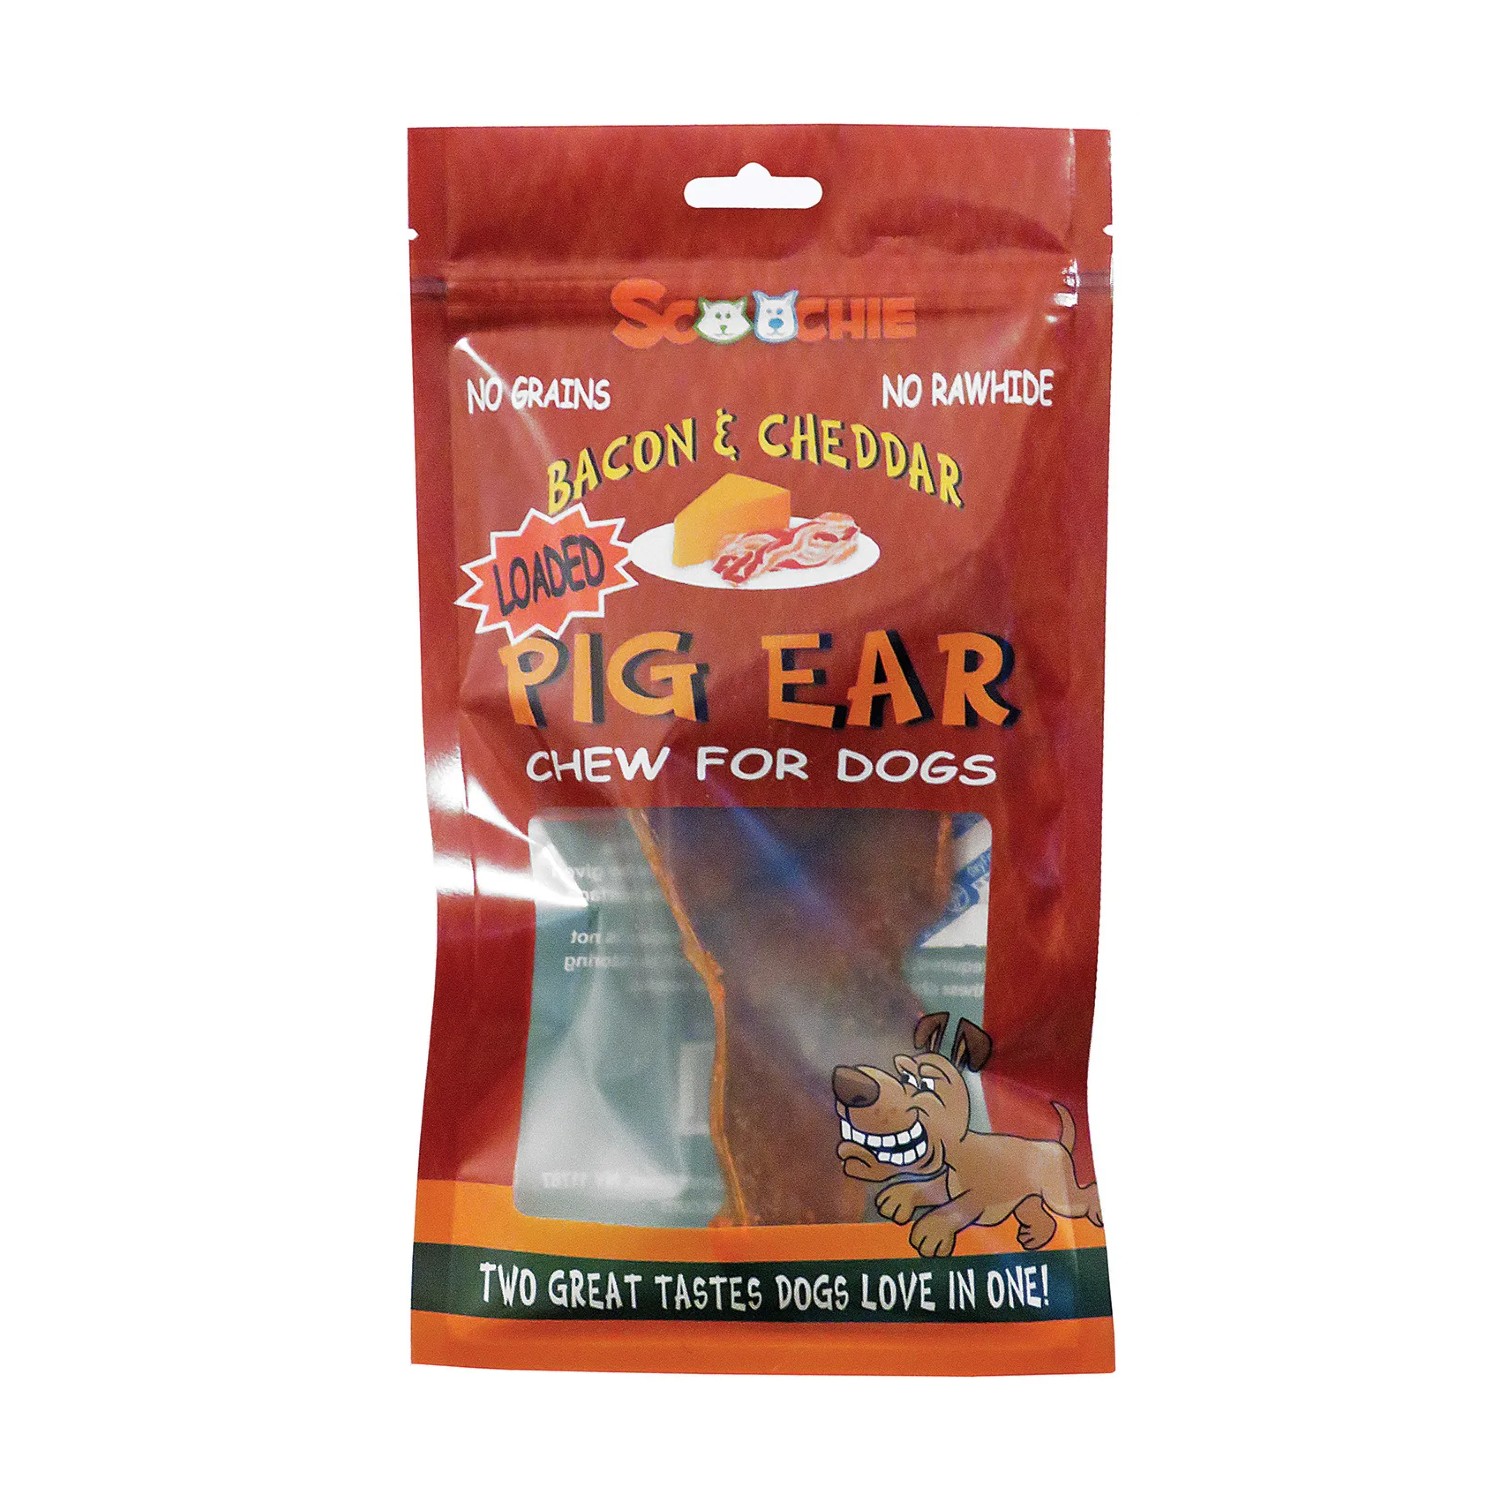 Scoochie Pet Loaded Pig Ear Dog Treat - Bacon & Cheddar